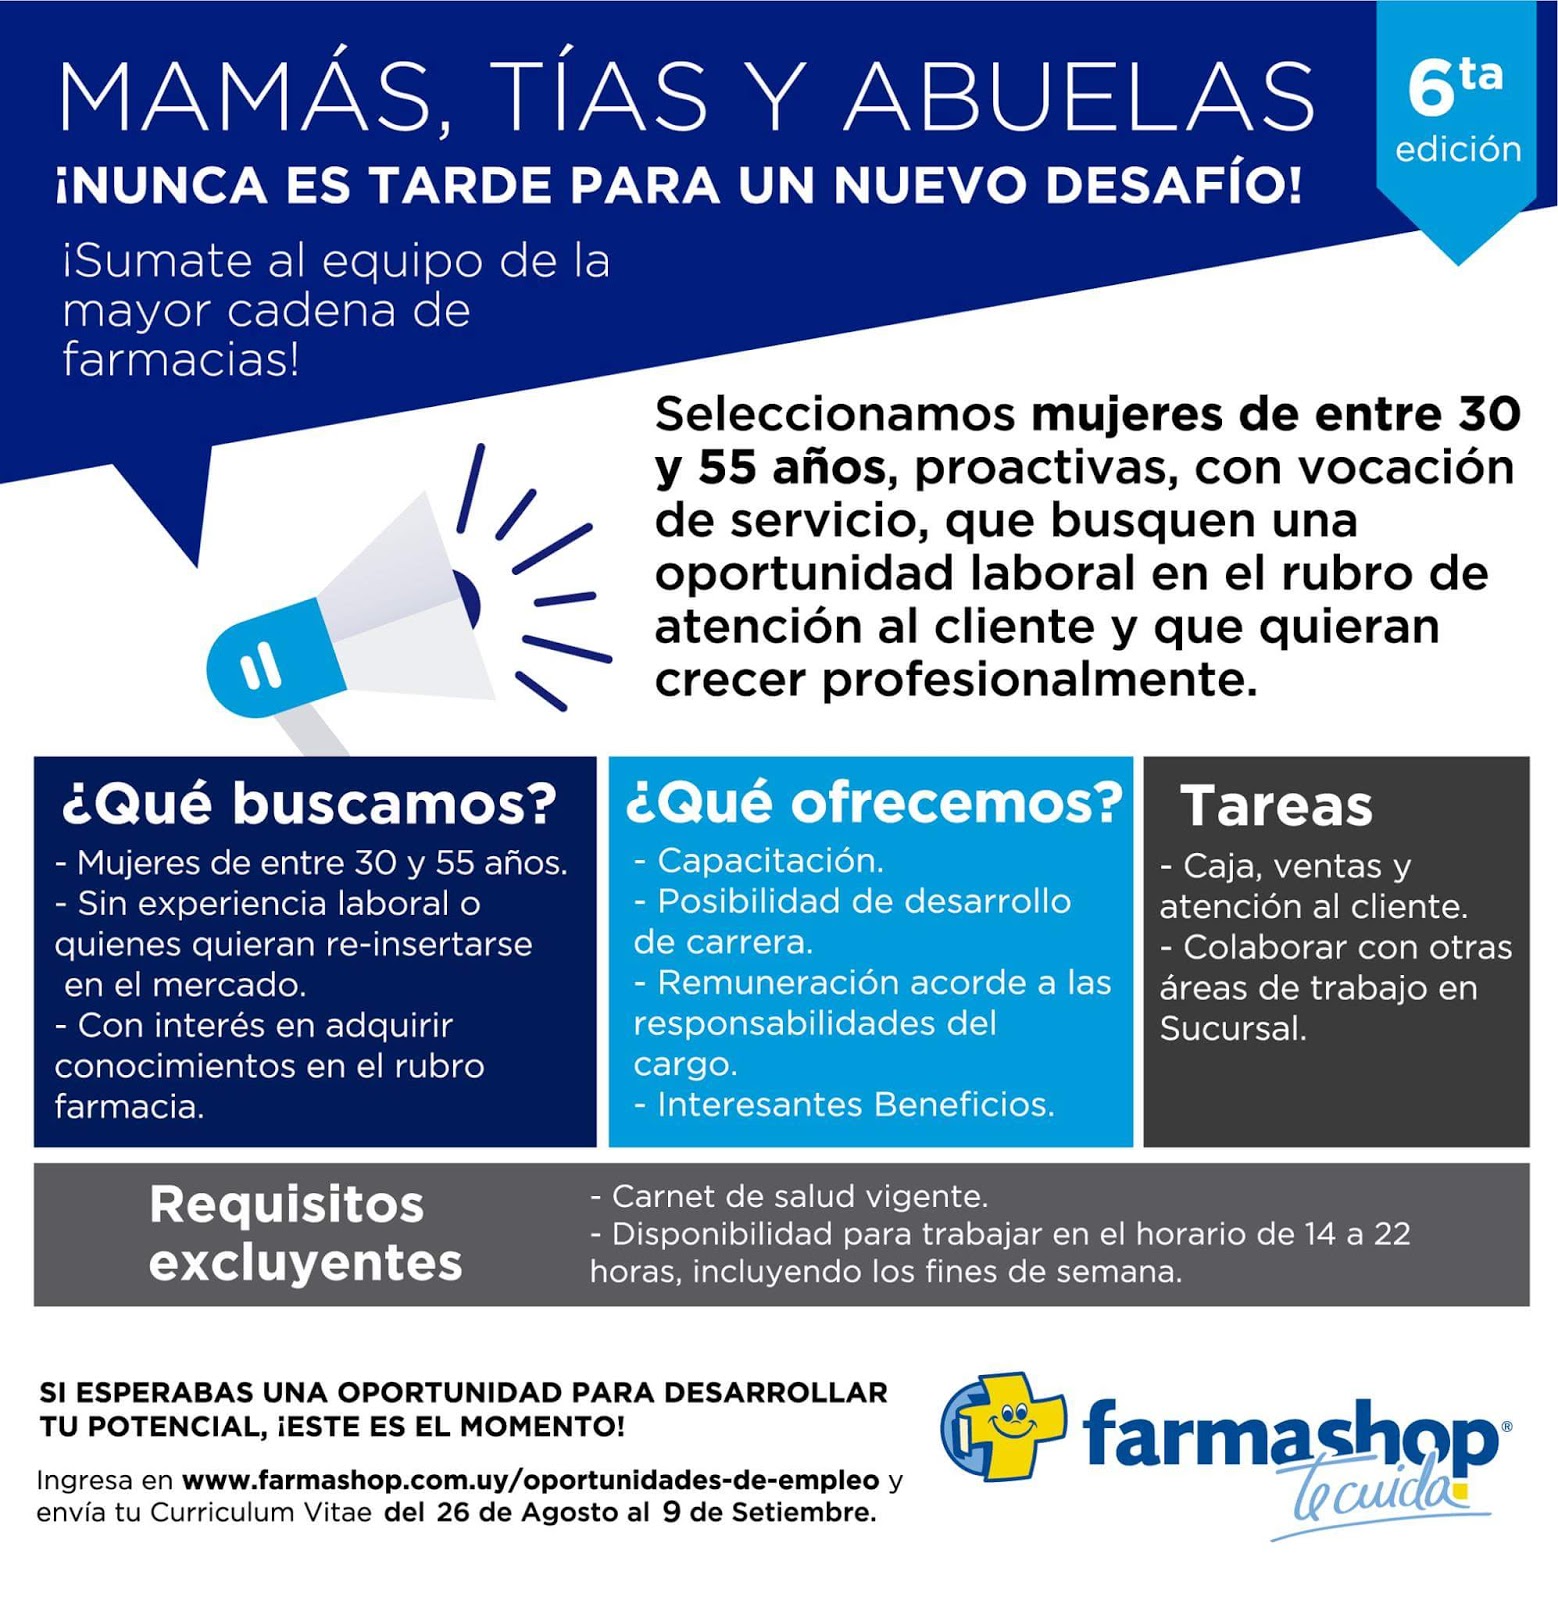 Conseguir Trabajo En Uruguay Mujeres De 30 A 55 Anos Farmashop